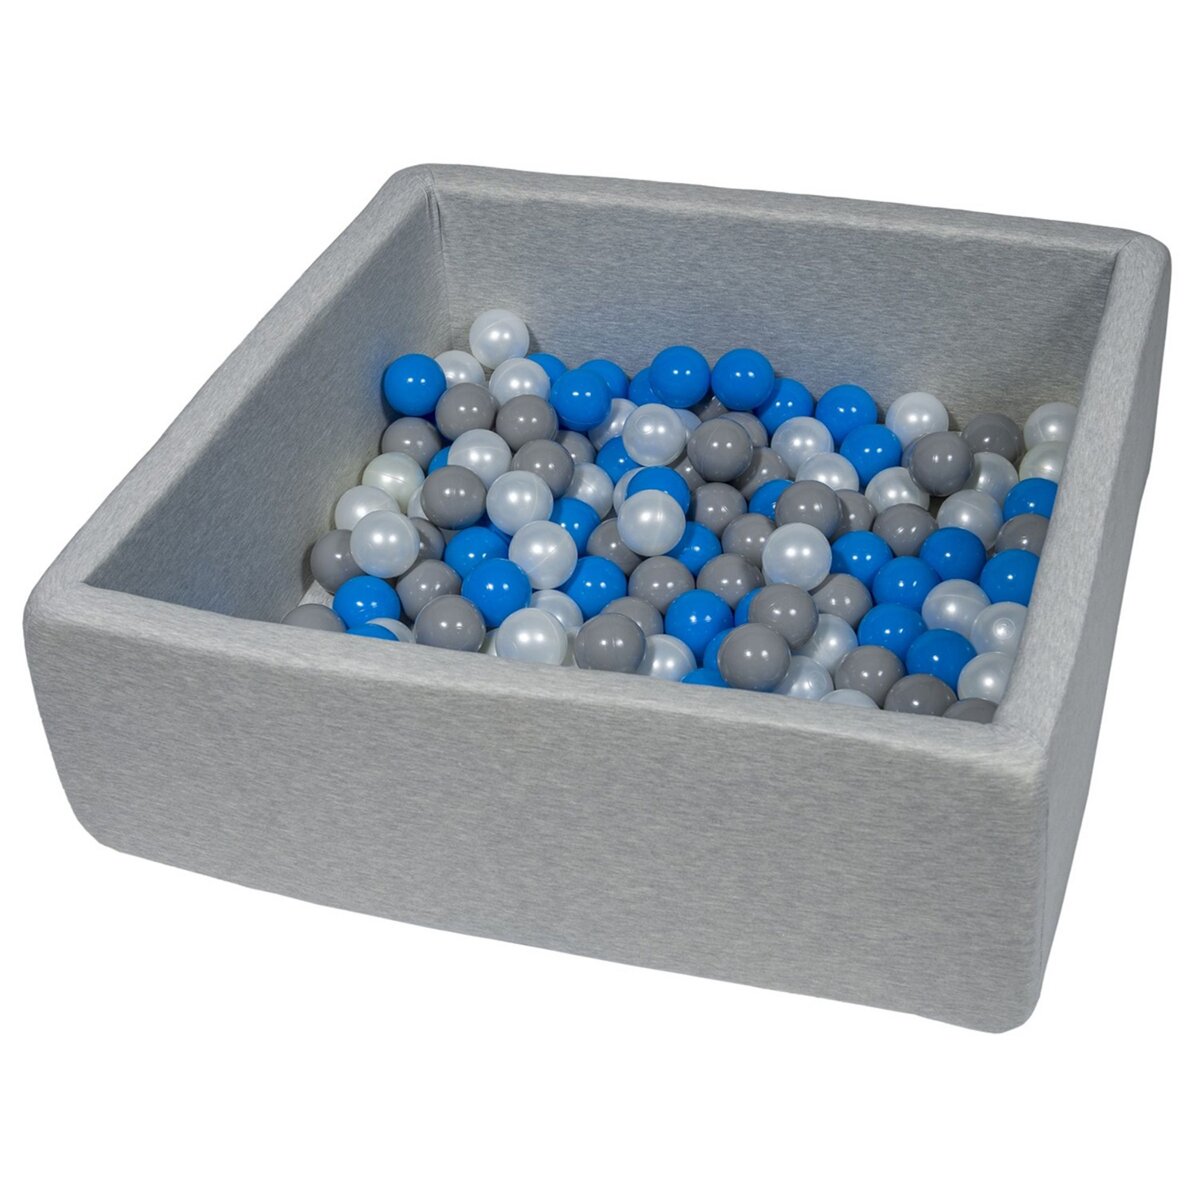  Piscine à balles pour enfant, dimensions: 90x90 cm + 150 balles perle, bleu, gris